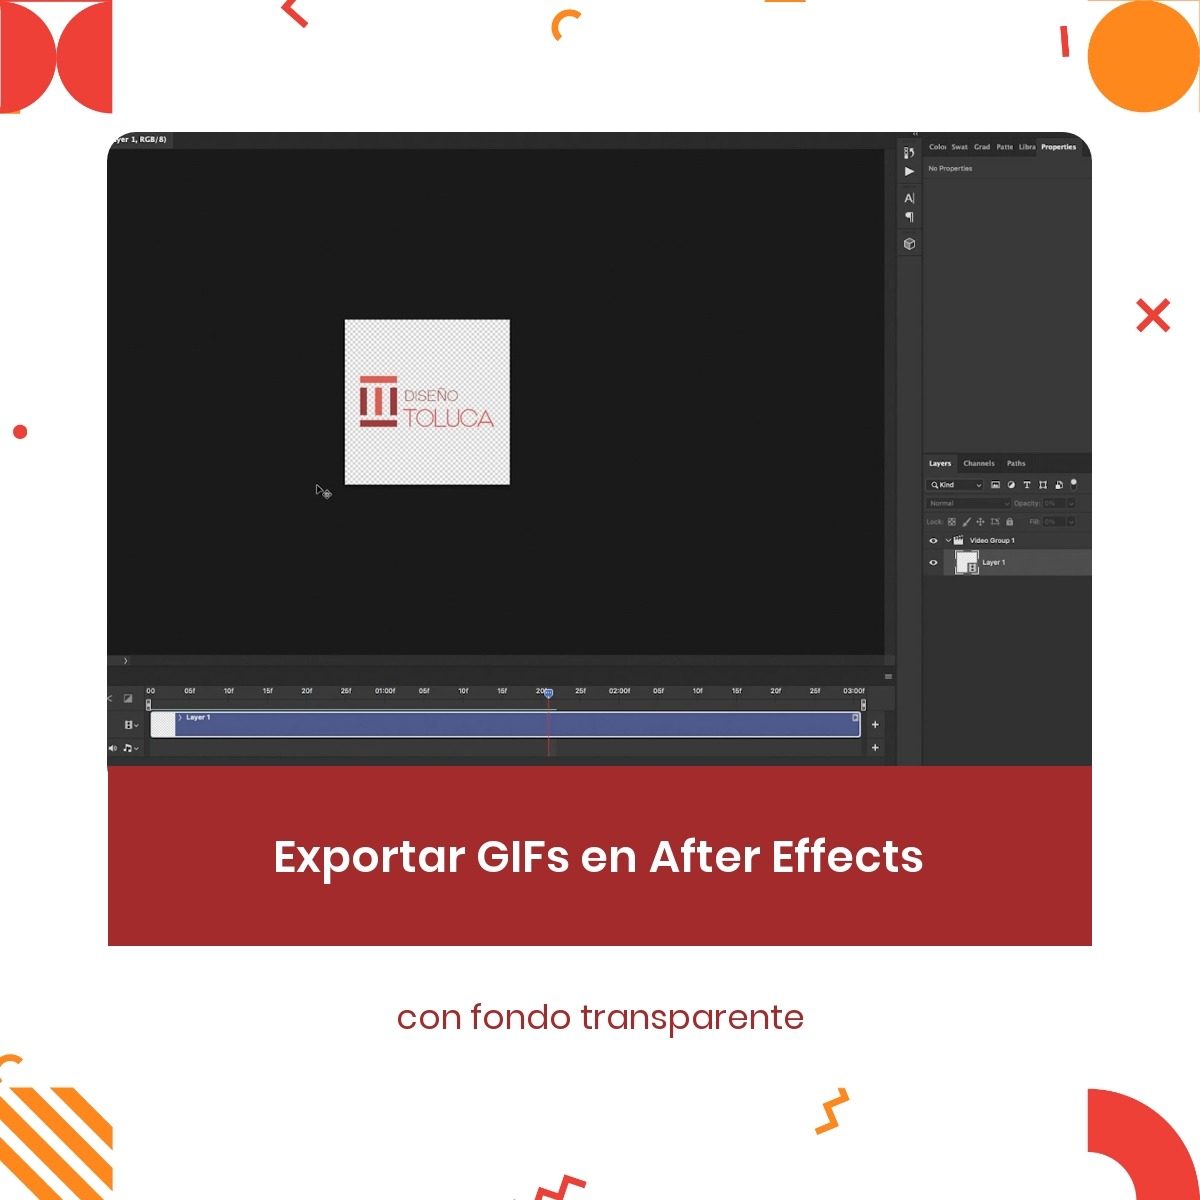 Exportar GIFs en After Effects con fondo transparente